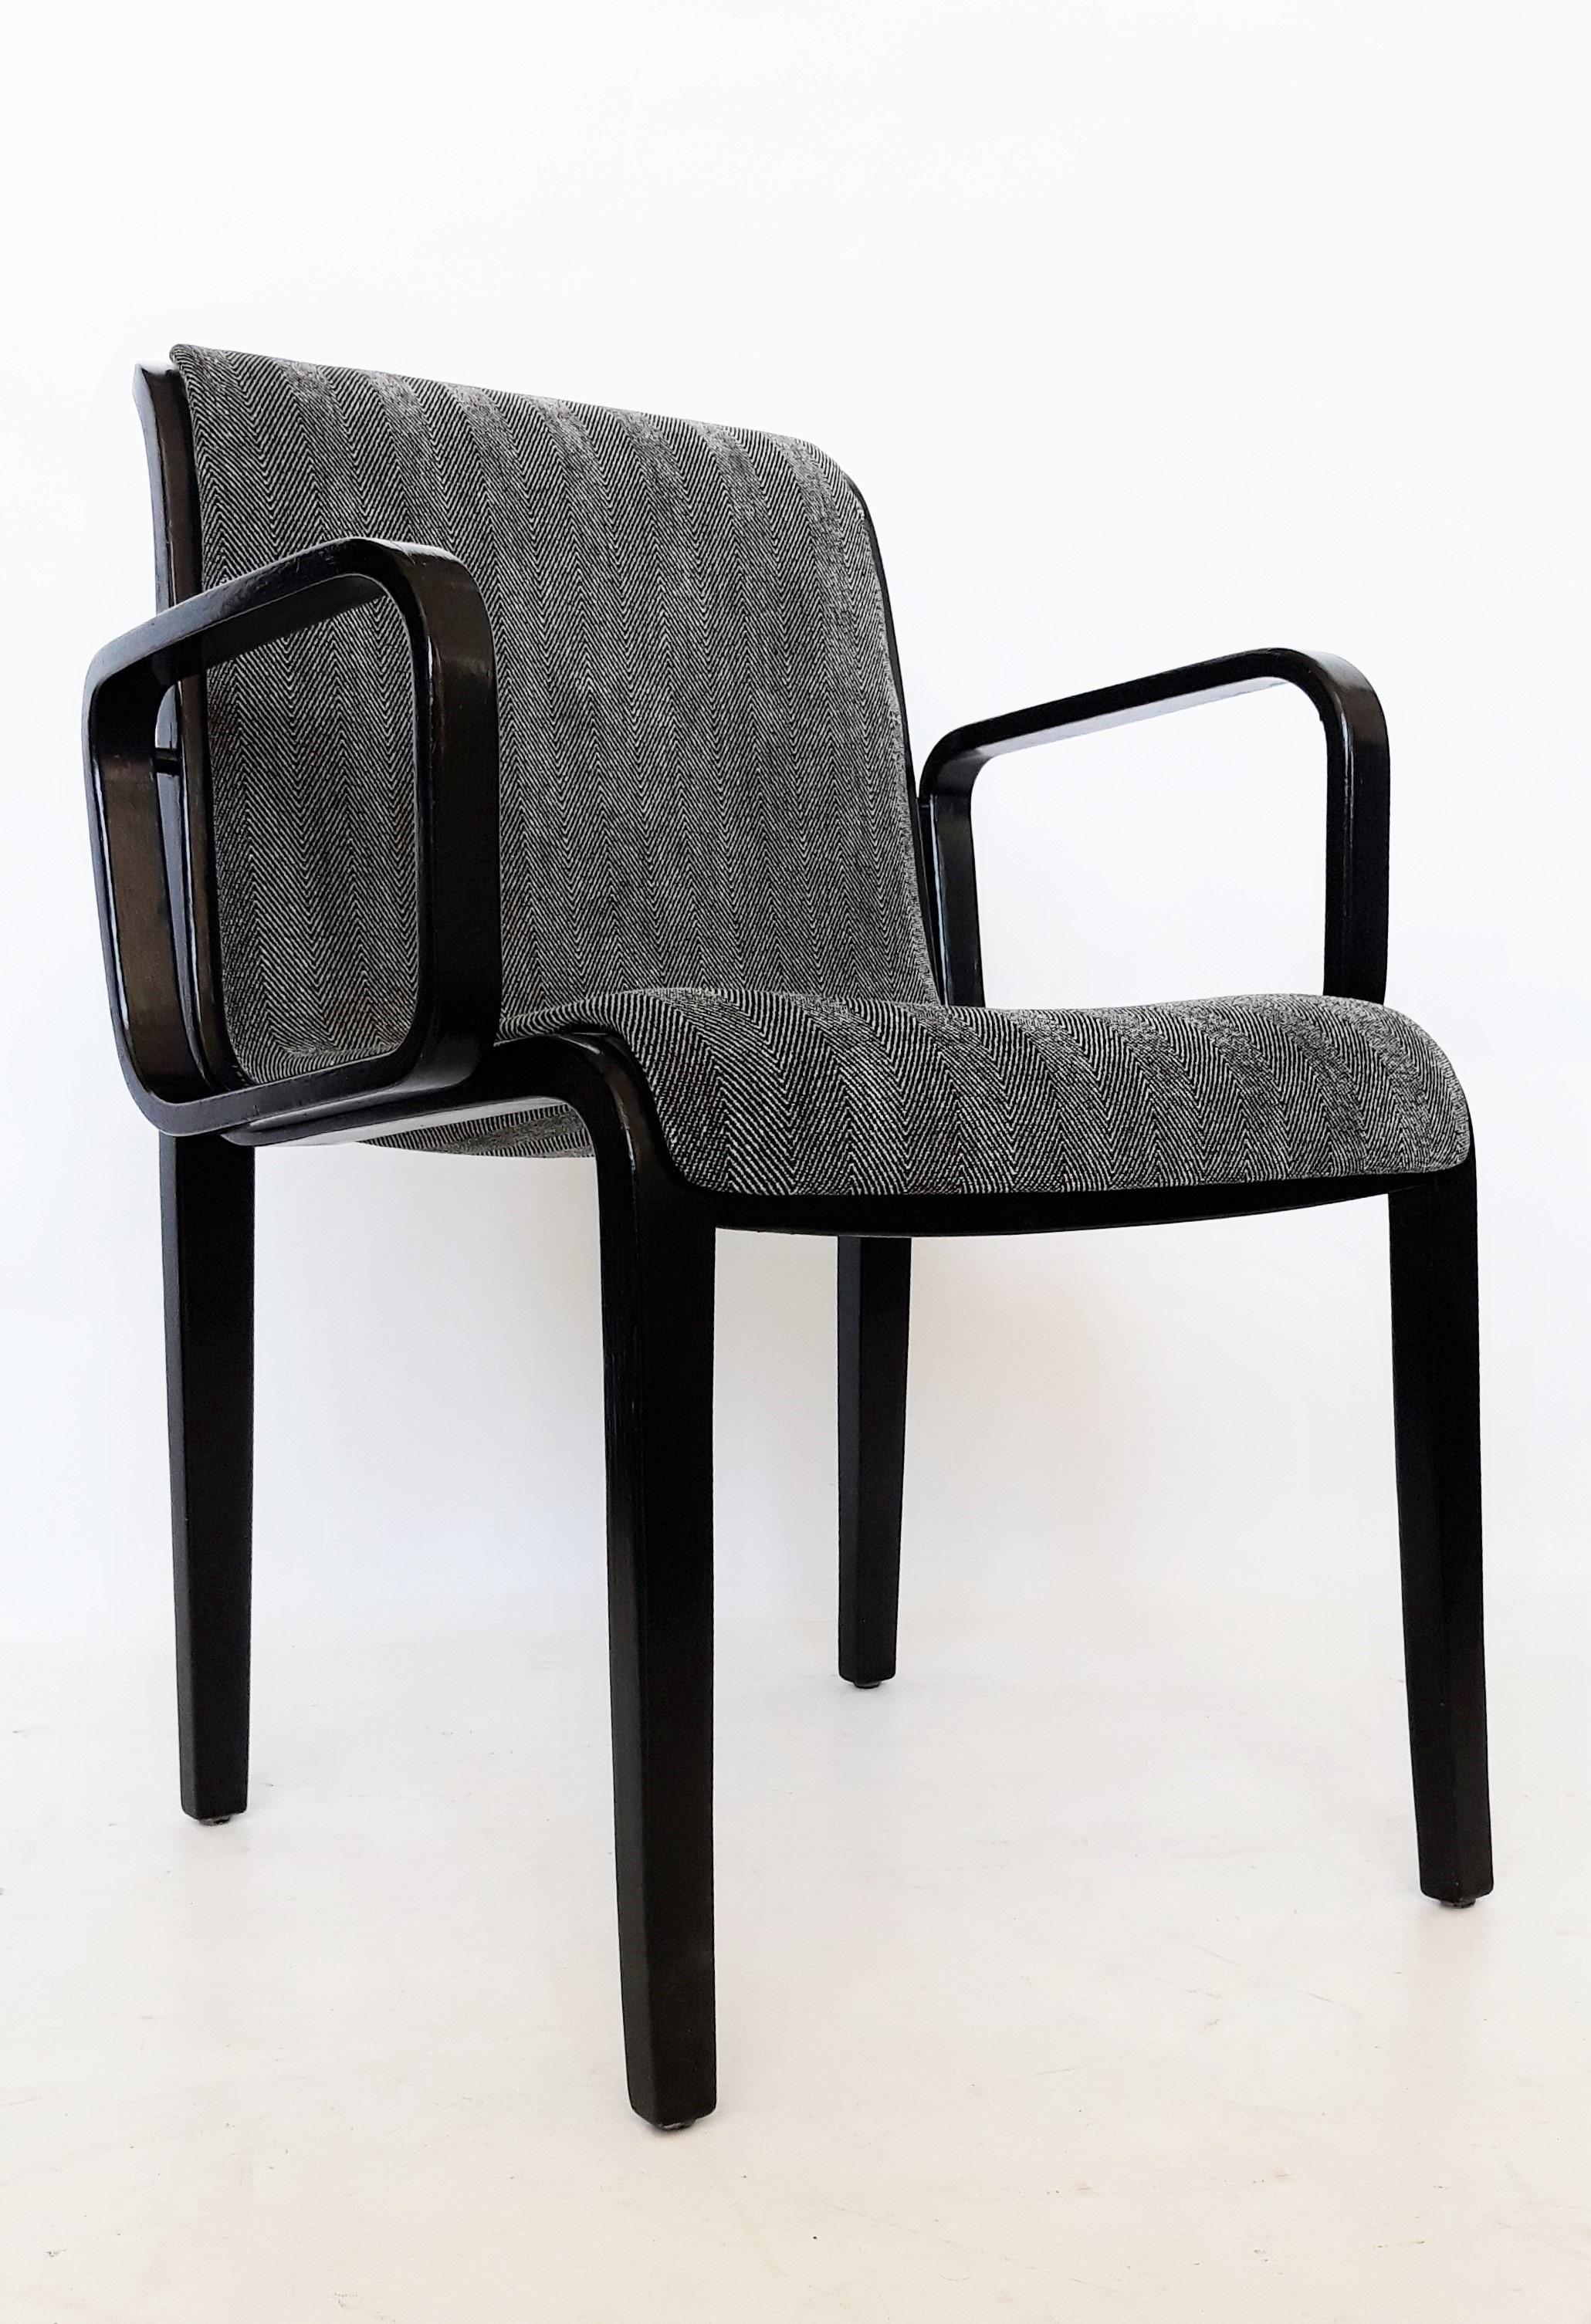 Cet ensemble vintage de fauteuils de la série 1300 a été conçu par William 